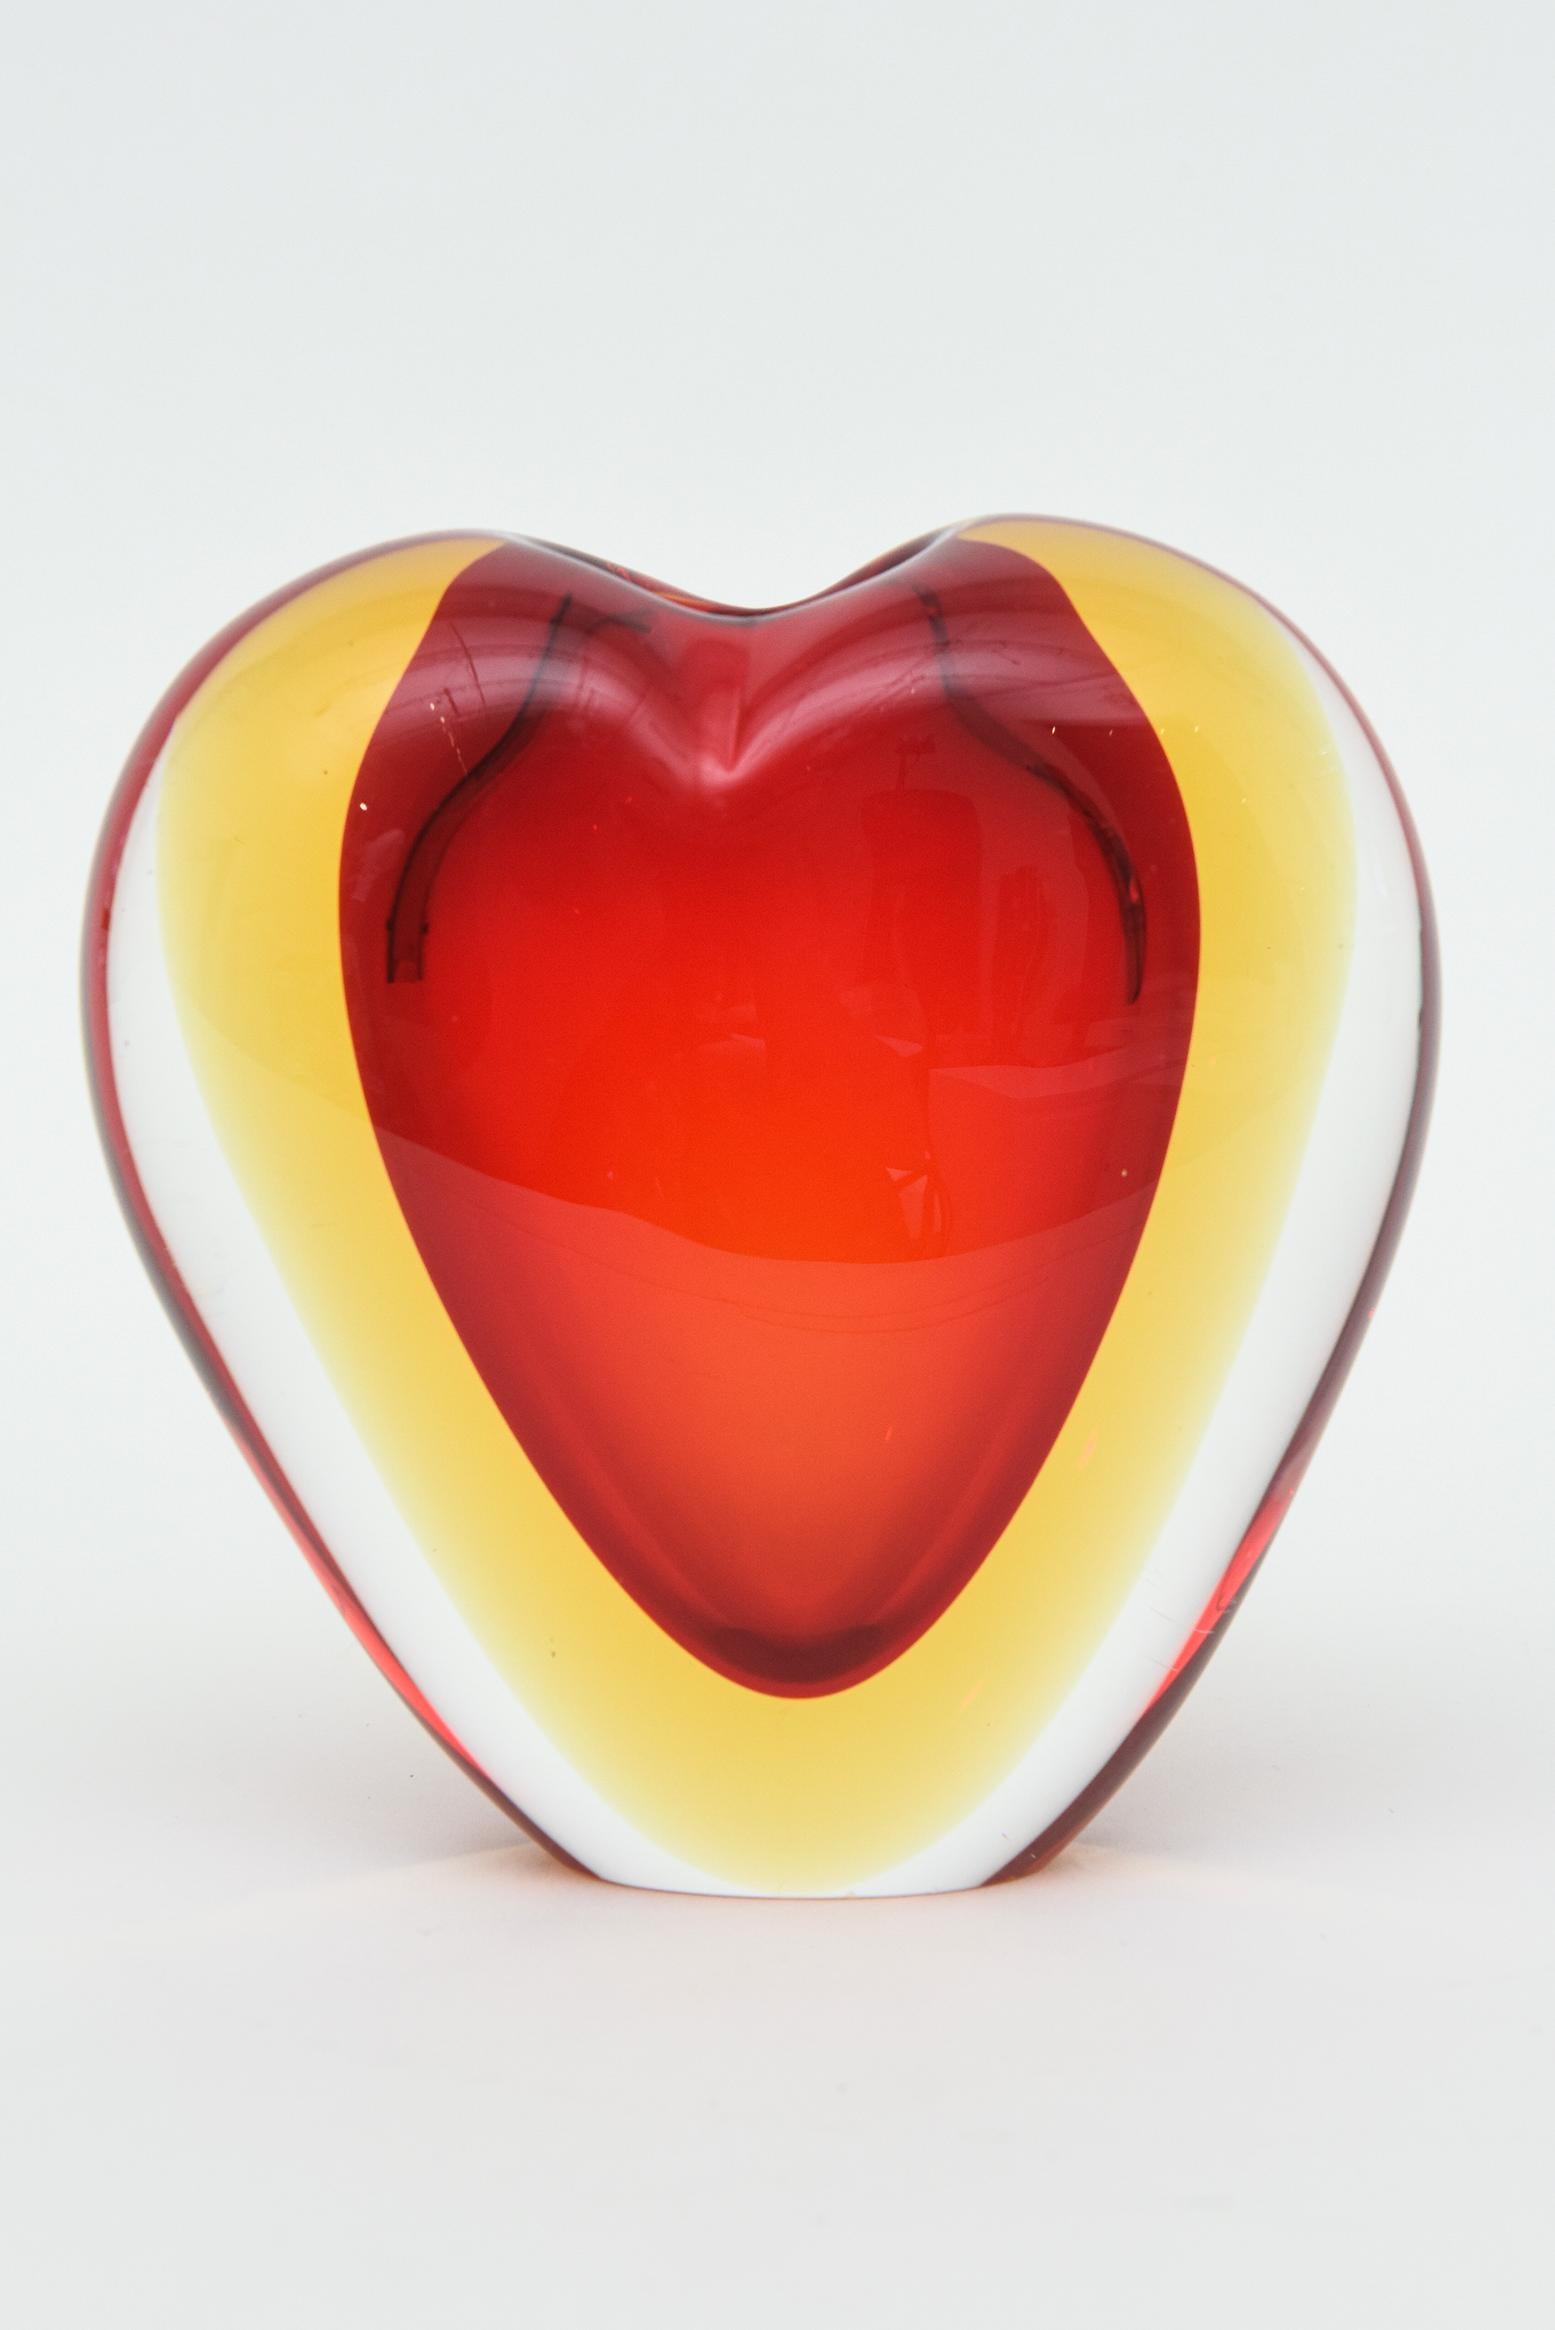 Ce magnifique vase ou objet sculptural en forme de cœur en verre de Murano est une création d'Antonio da Ros pour Cenedese datant des années 70. Il s'agit d'un verre sommerso stratifié rouge, jaune puis transparent. La forme est celle d'un cœur et